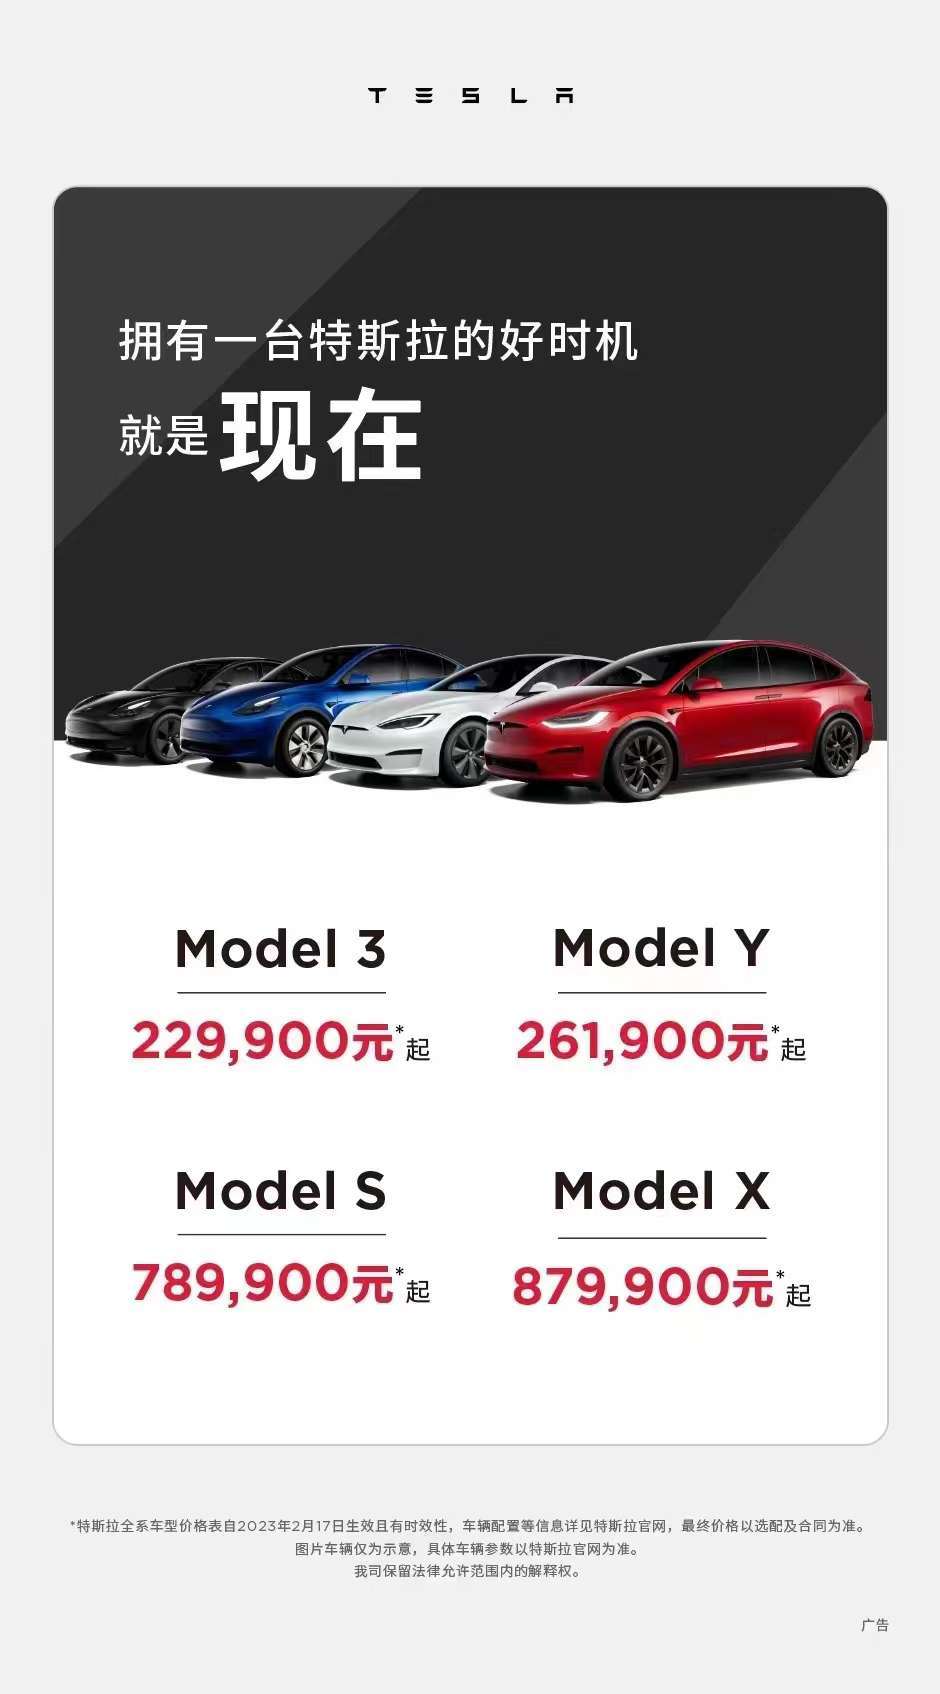 特斯拉Model Y部门车型涨价 涨幅2000元